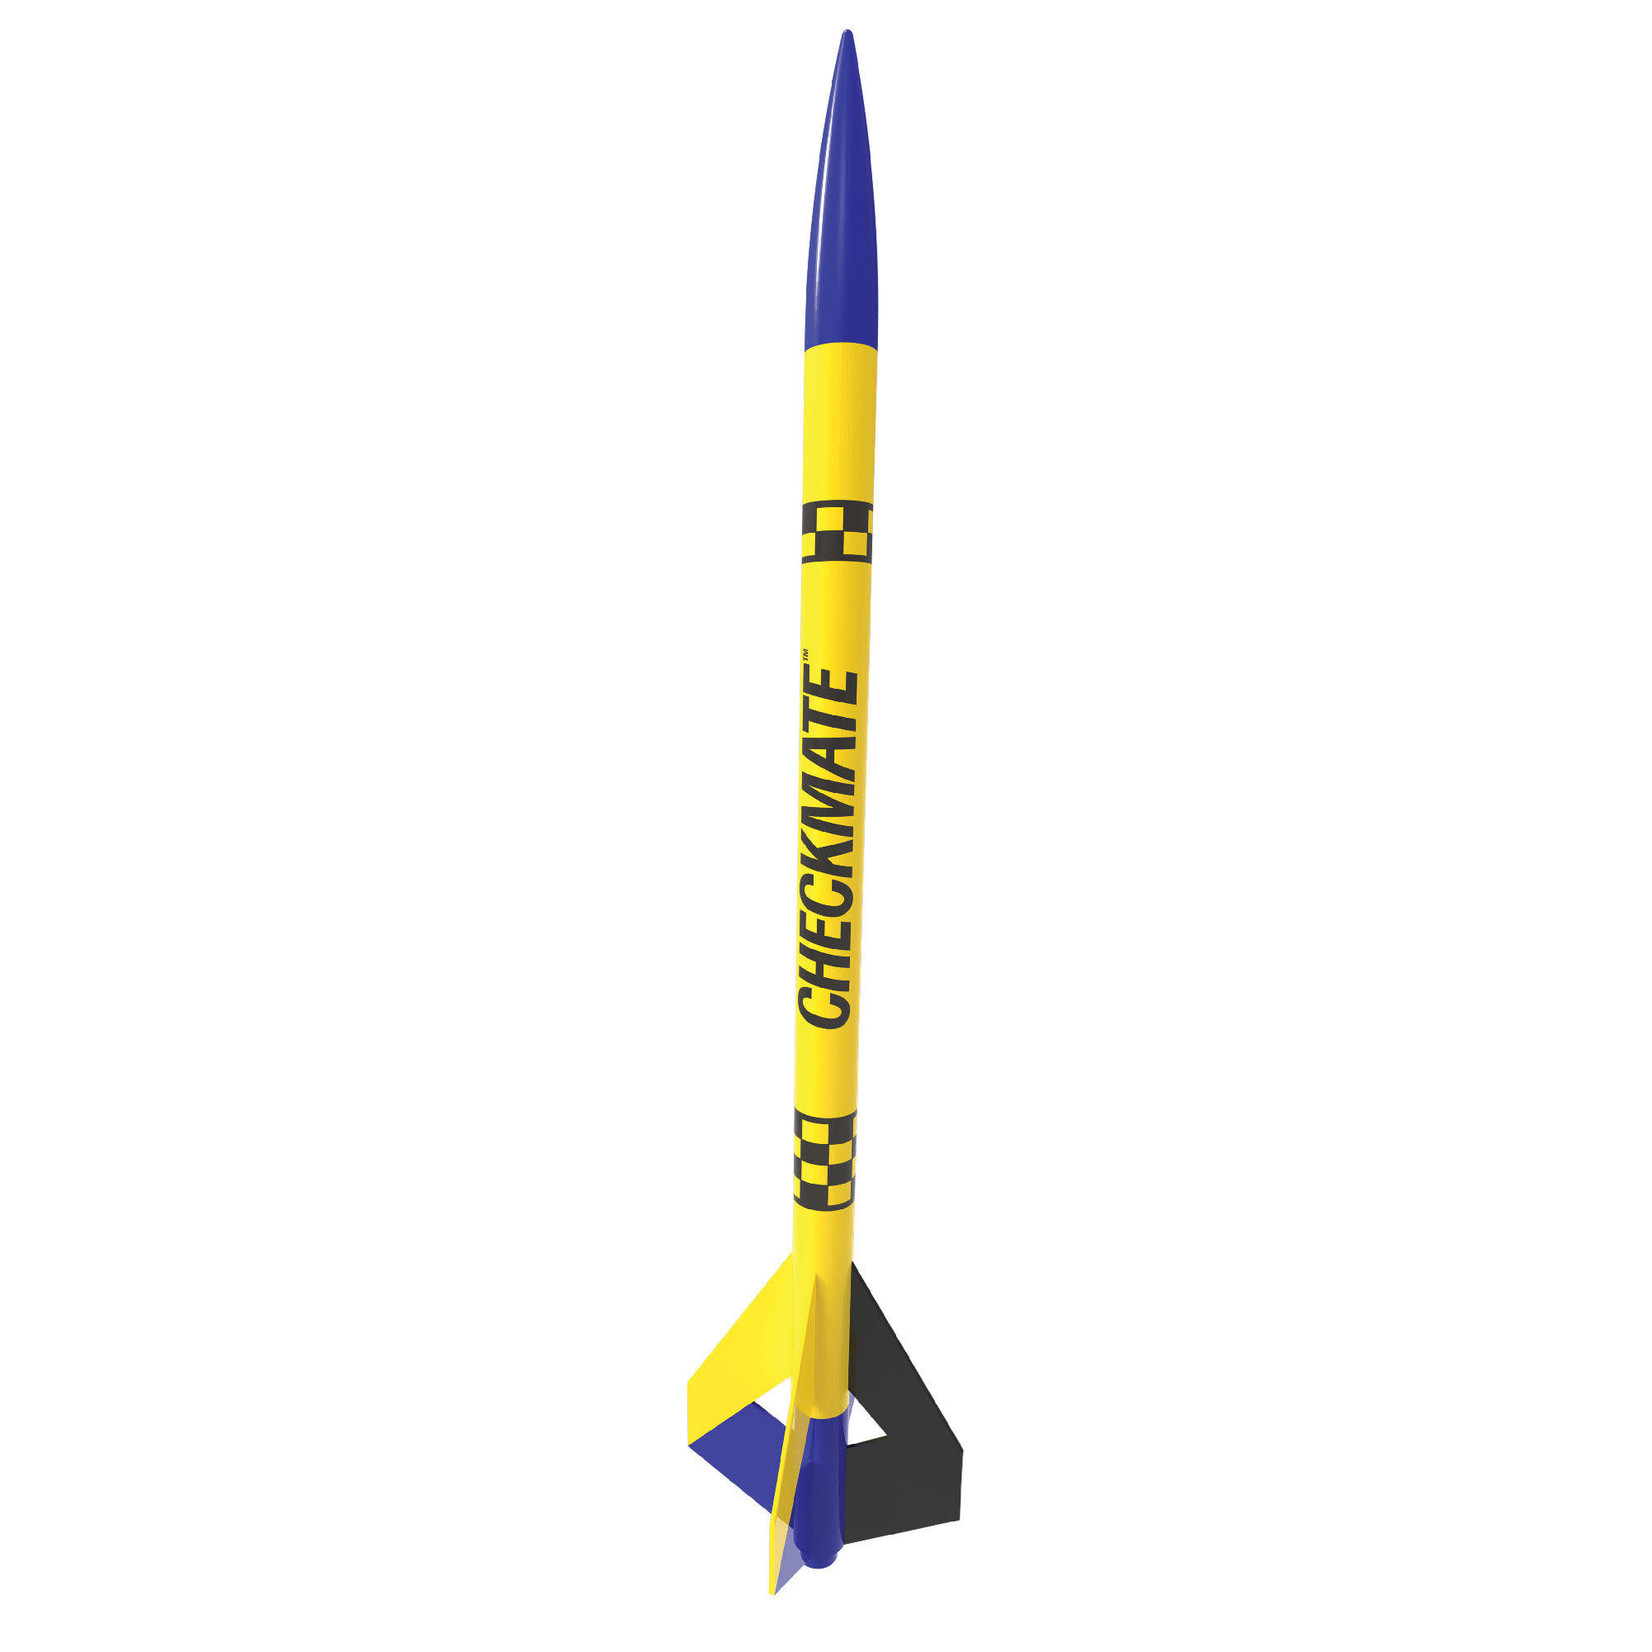 Estes EST7276 Estes Rockets Checkmate Flying Model Rocket Kit Skill Level 1